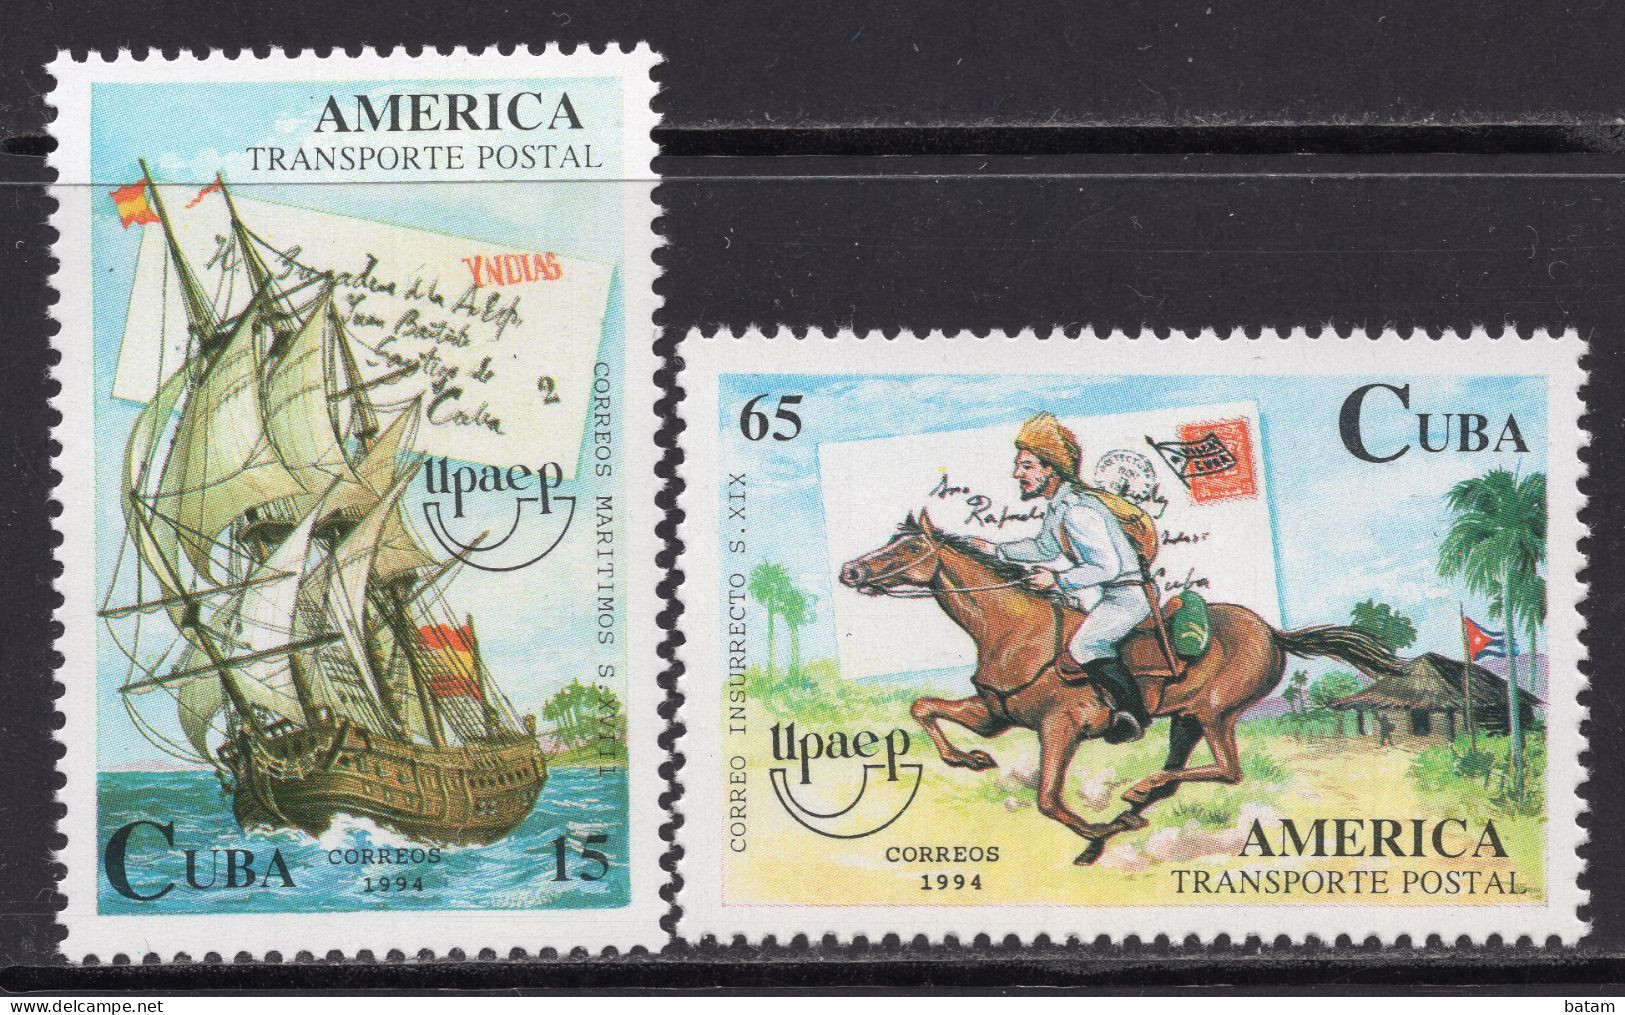 CUBA 1994 - Postal Transport - America - Ship - Hors - MNH Set - Nuovi